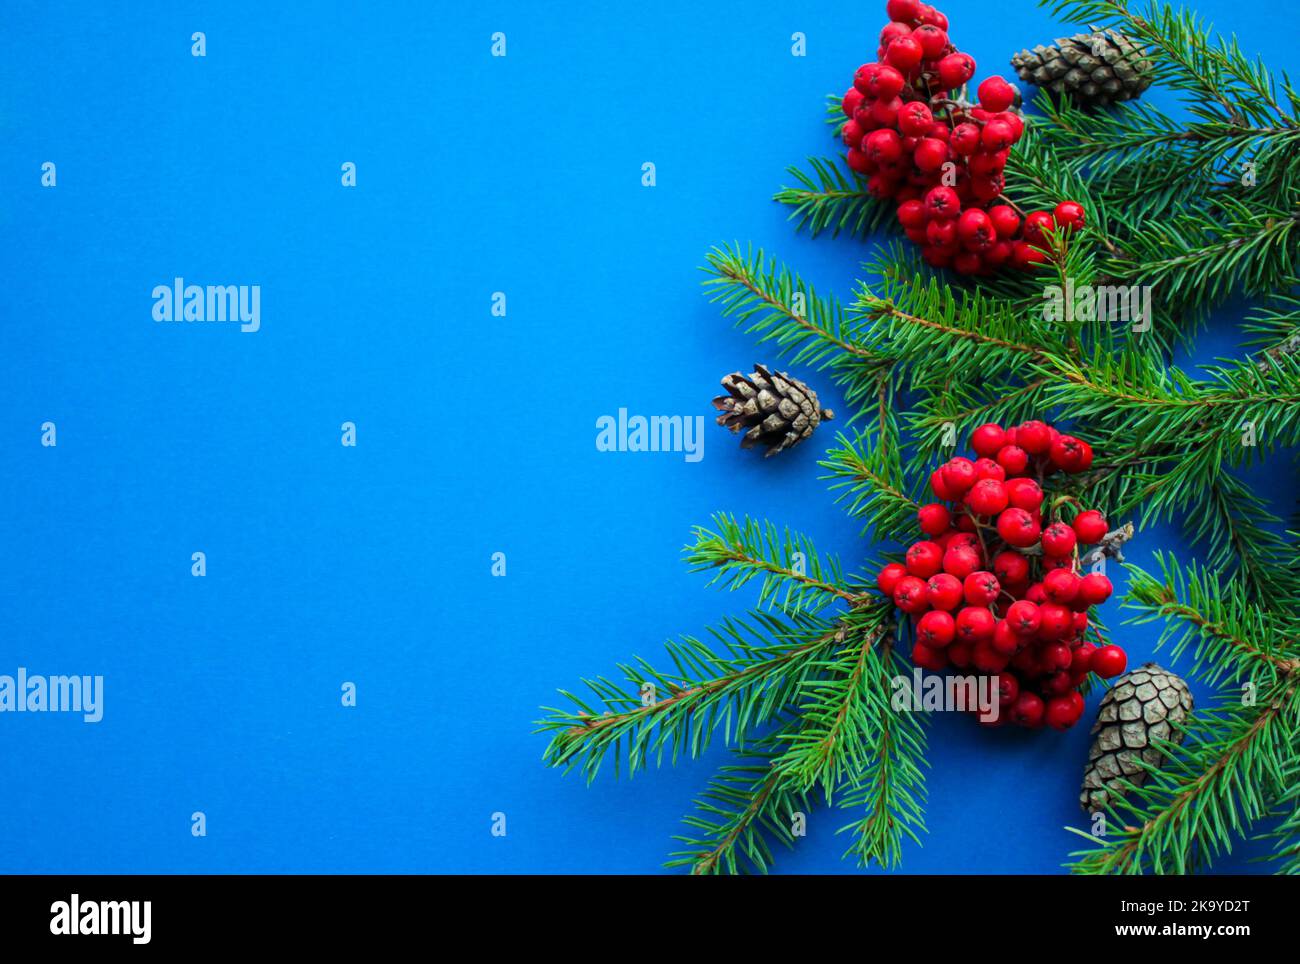 L'esprit de Noël : branches de sapin, cônes, baies de rowan rouge vif sur fond bleu foncé vif avec espace pour le texte Banque D'Images